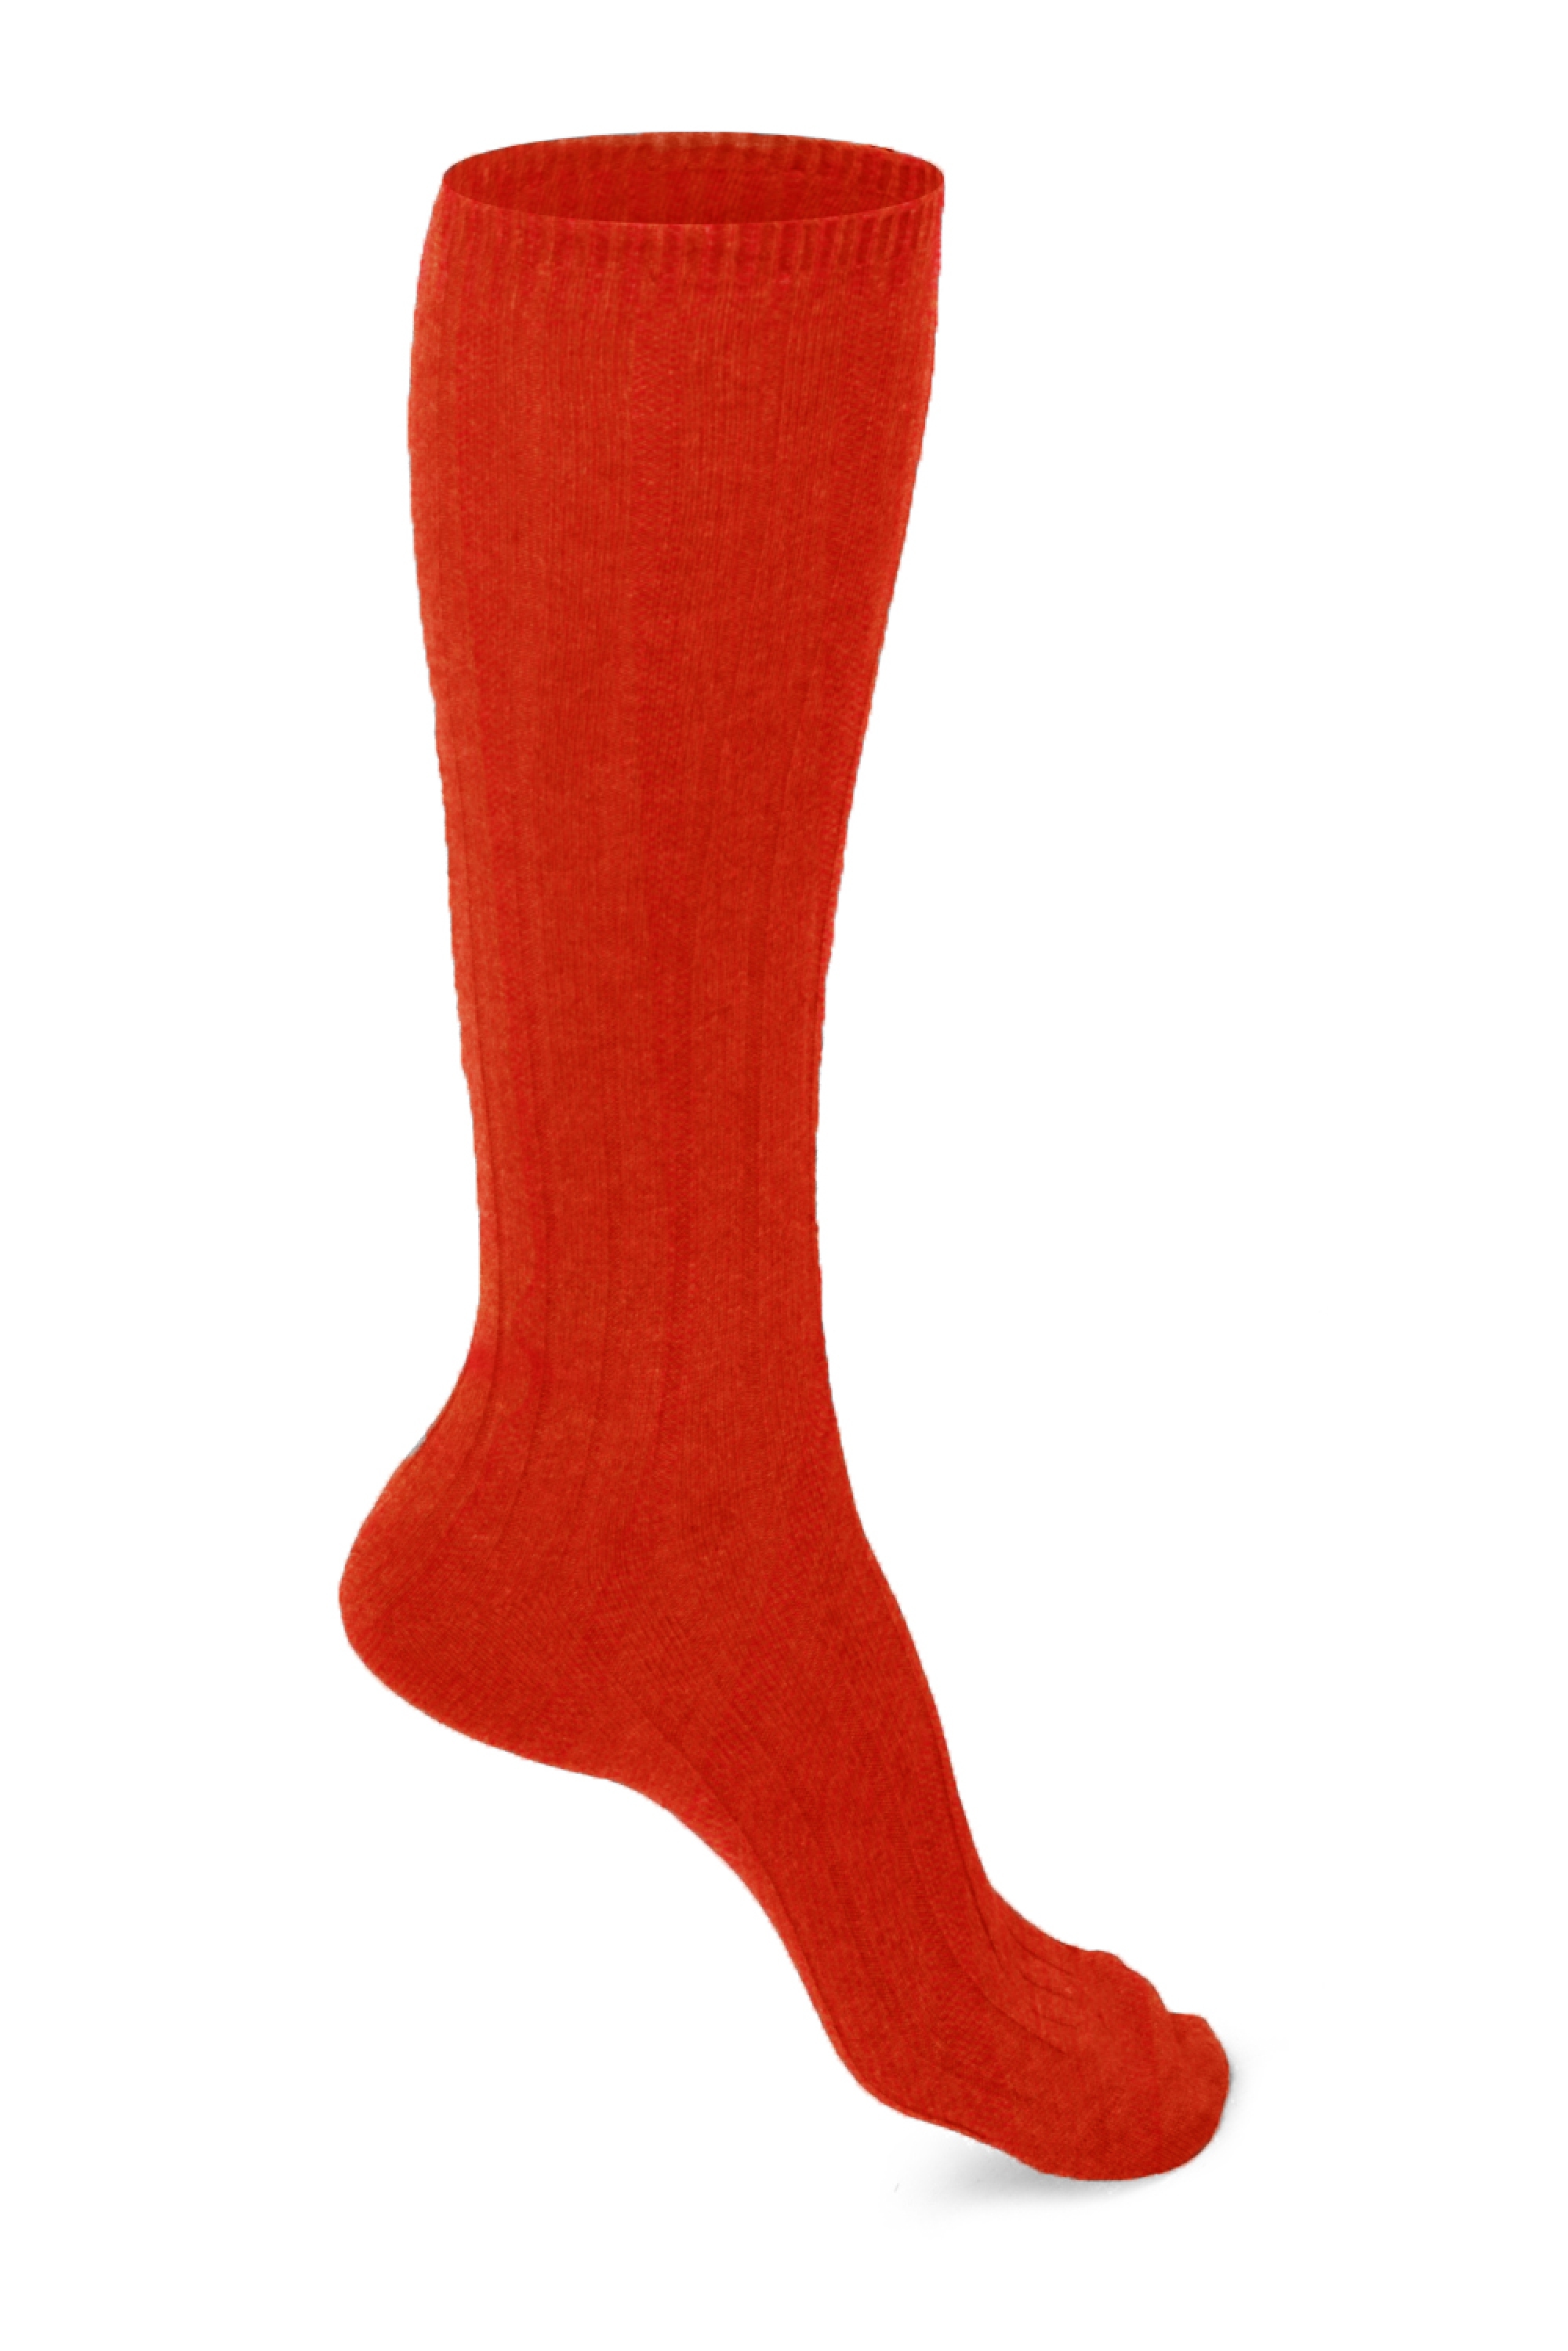 Cachemire accessoires chaussettes dragibus long w bloody orange 39 42